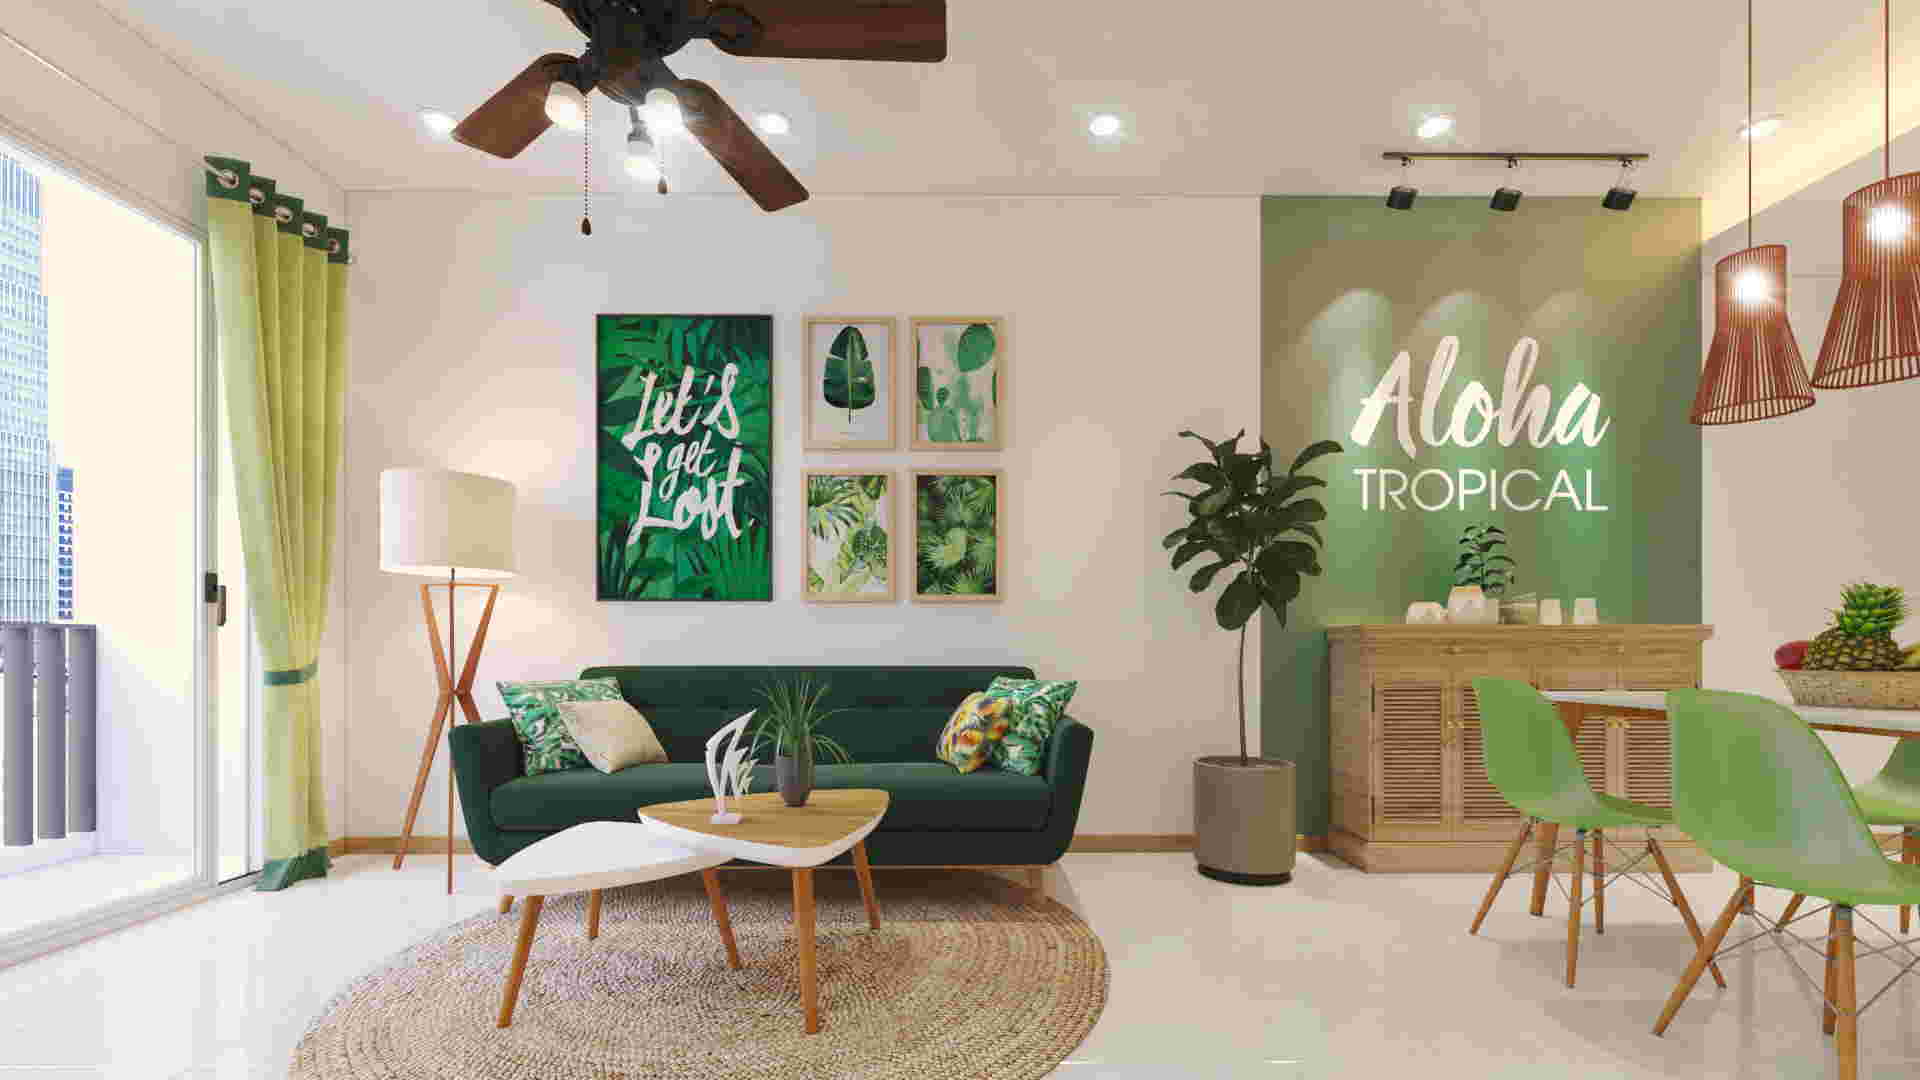 Phong cách thiết kế nội thất nhiệt đới, mang đến một bầu trời không khí yên bình và tĩnh lặng (ảnh: Internet)